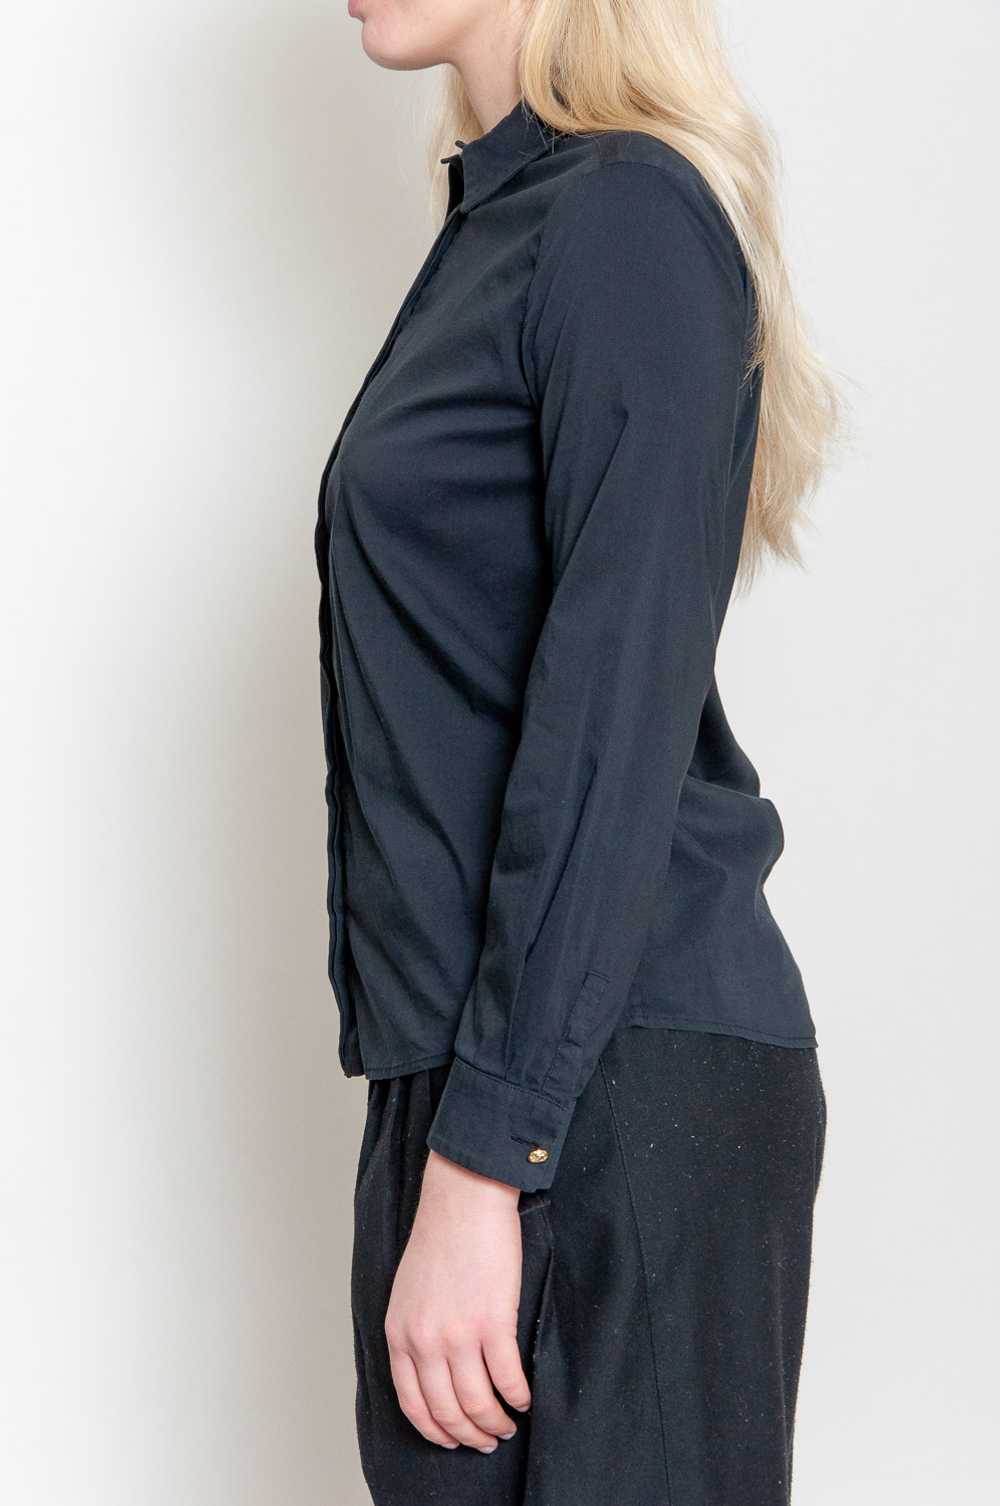 Simple Versace blouse Black Single color long sle… - image 4